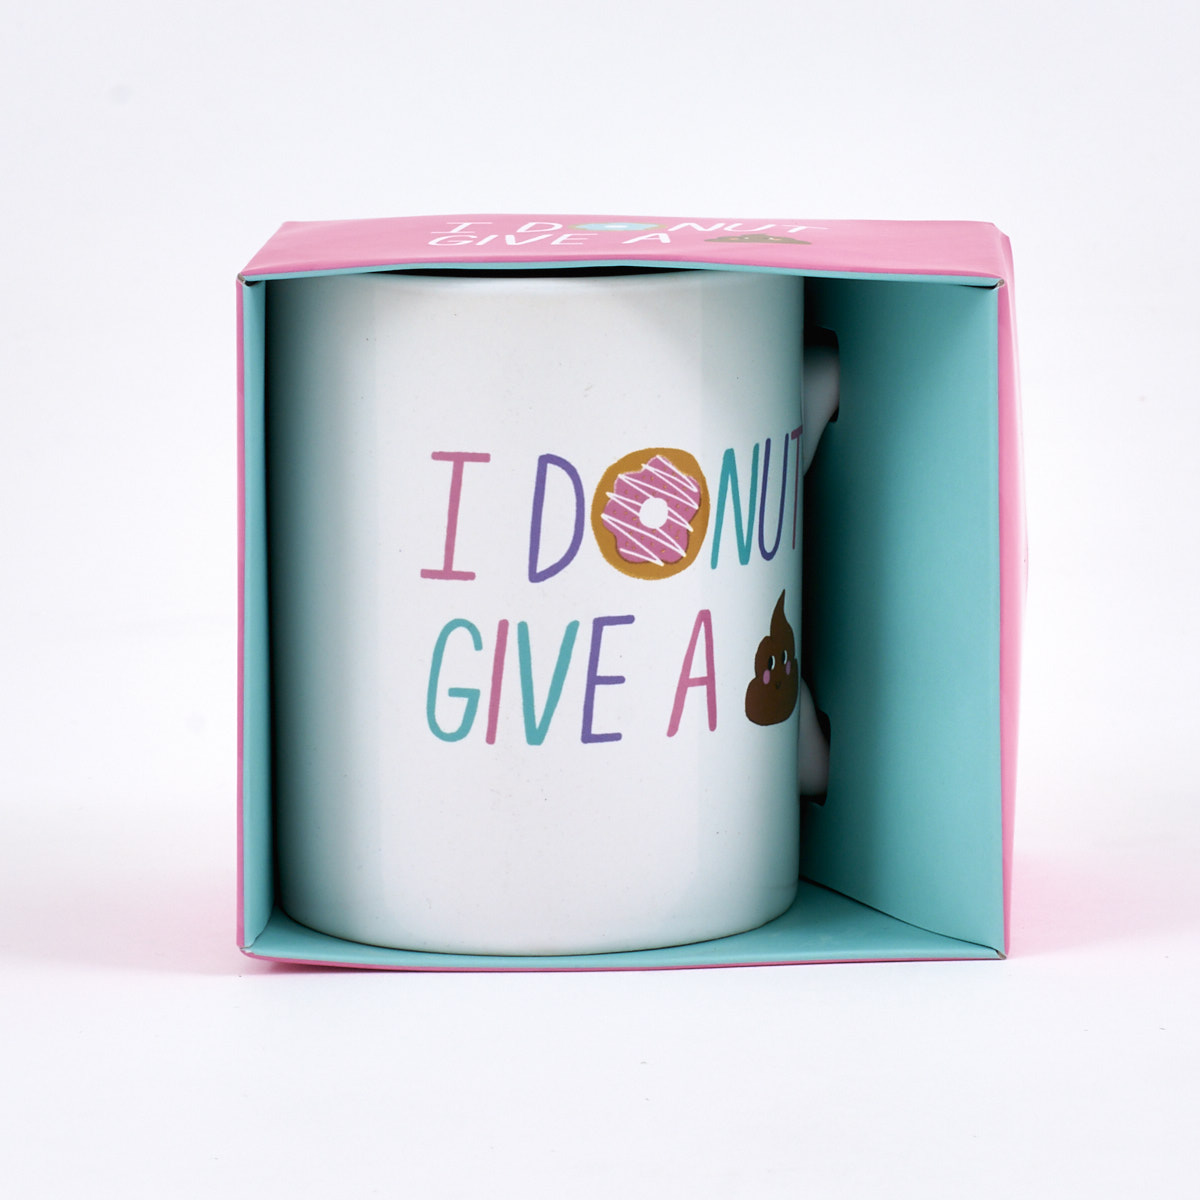 I Donut Give A... Mug 